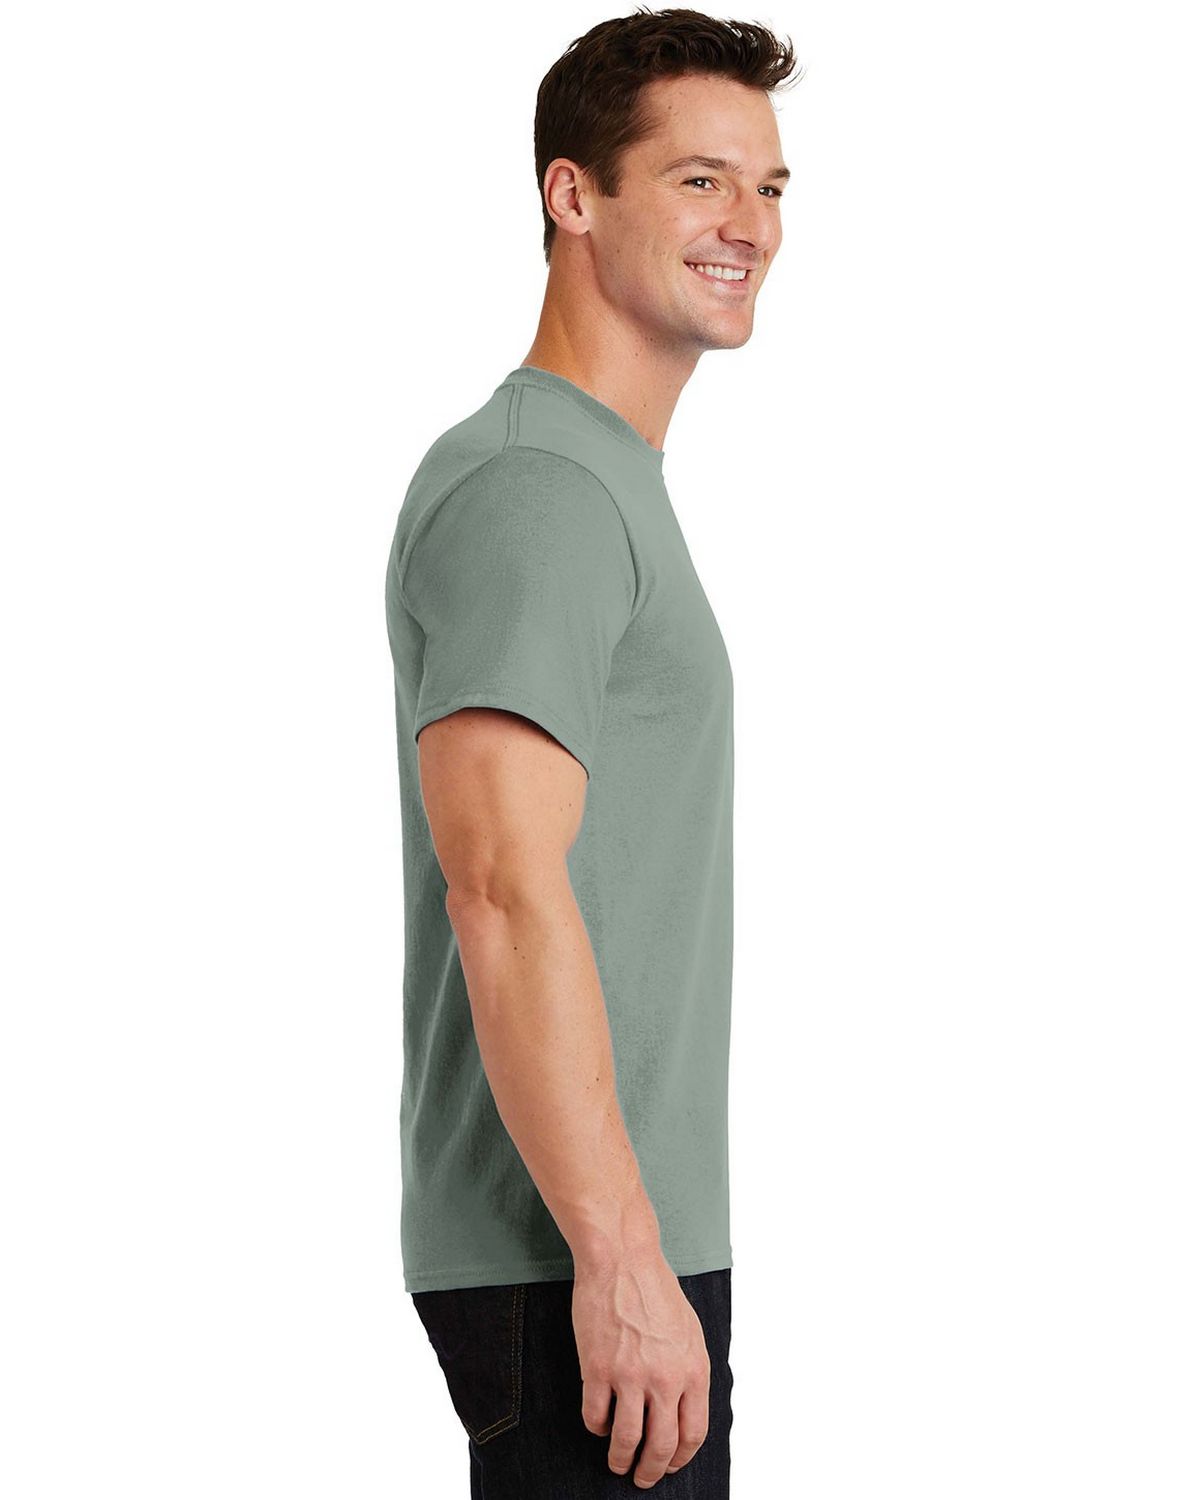 Port & Company PC61 Essential T-Shirt - ApparelnBags.com